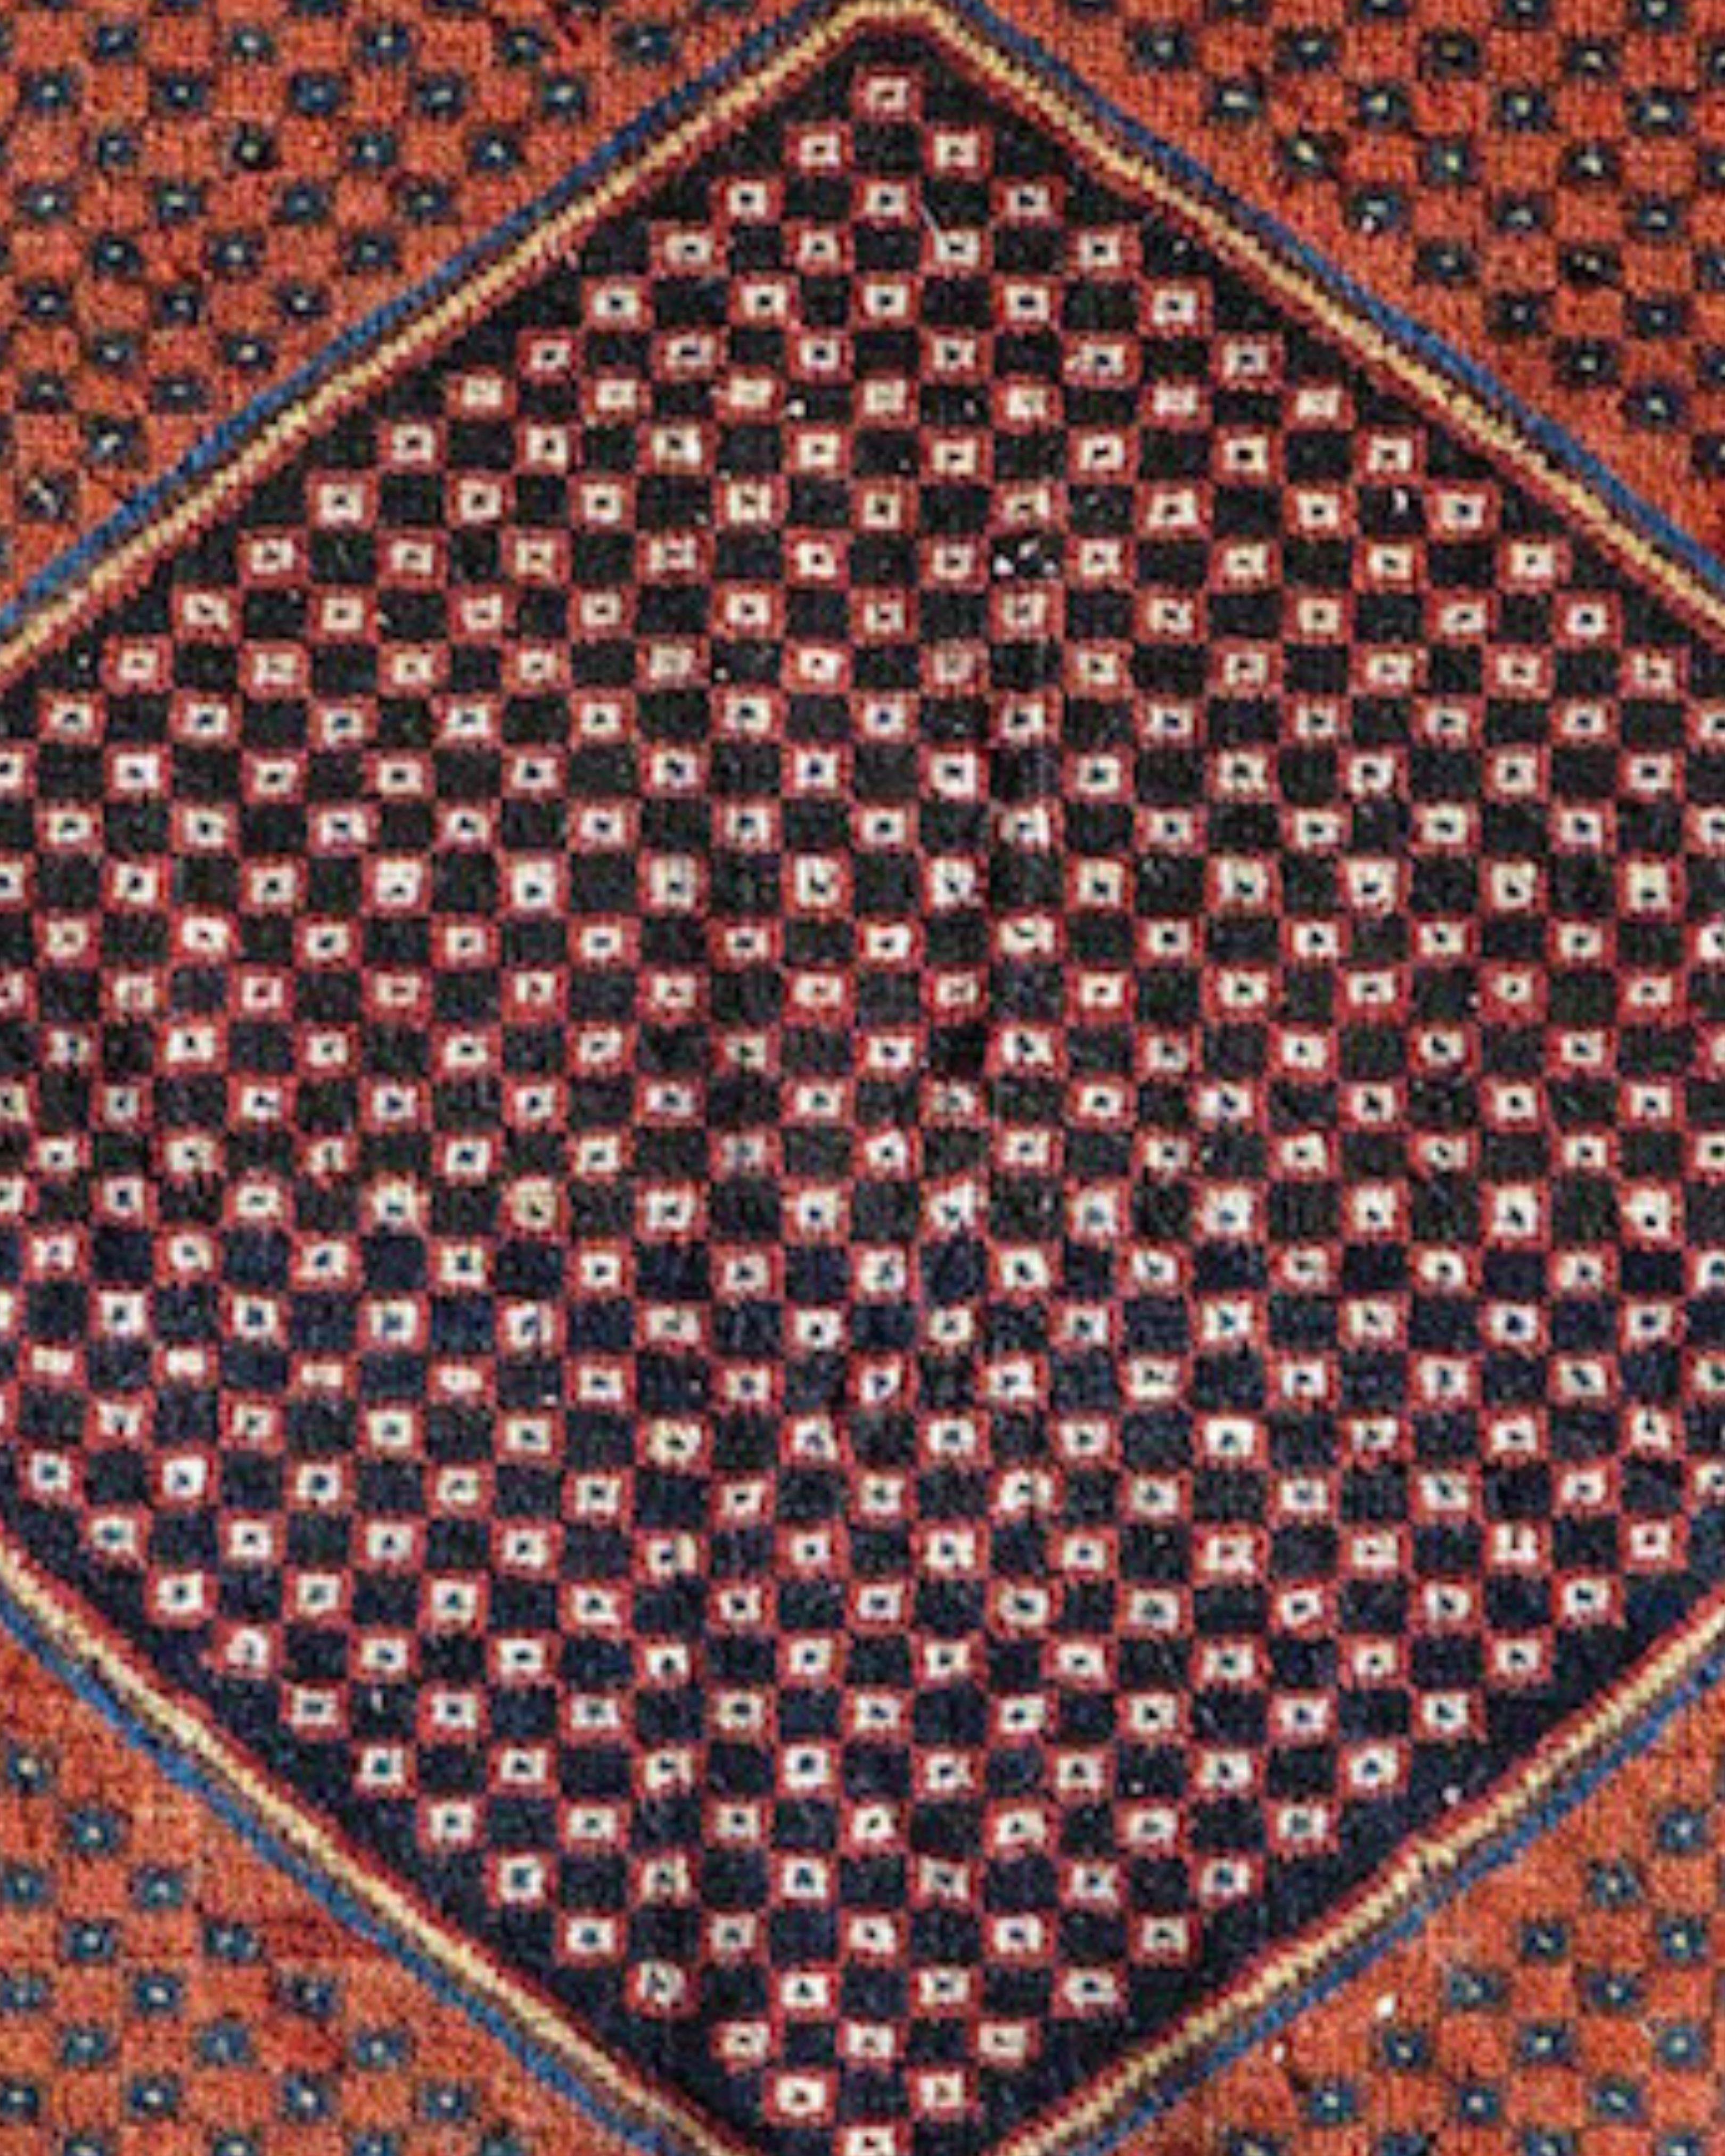 Ancien sac à main persan Afshar Bagface, c. 1900

La face du sac Afshar, très graphique, dessine un grand hexagone central bleu indigo sur un champ de terre cuite complémentaire et contrasté. Tous deux sont ponctués d'un réseau en damier, donnant